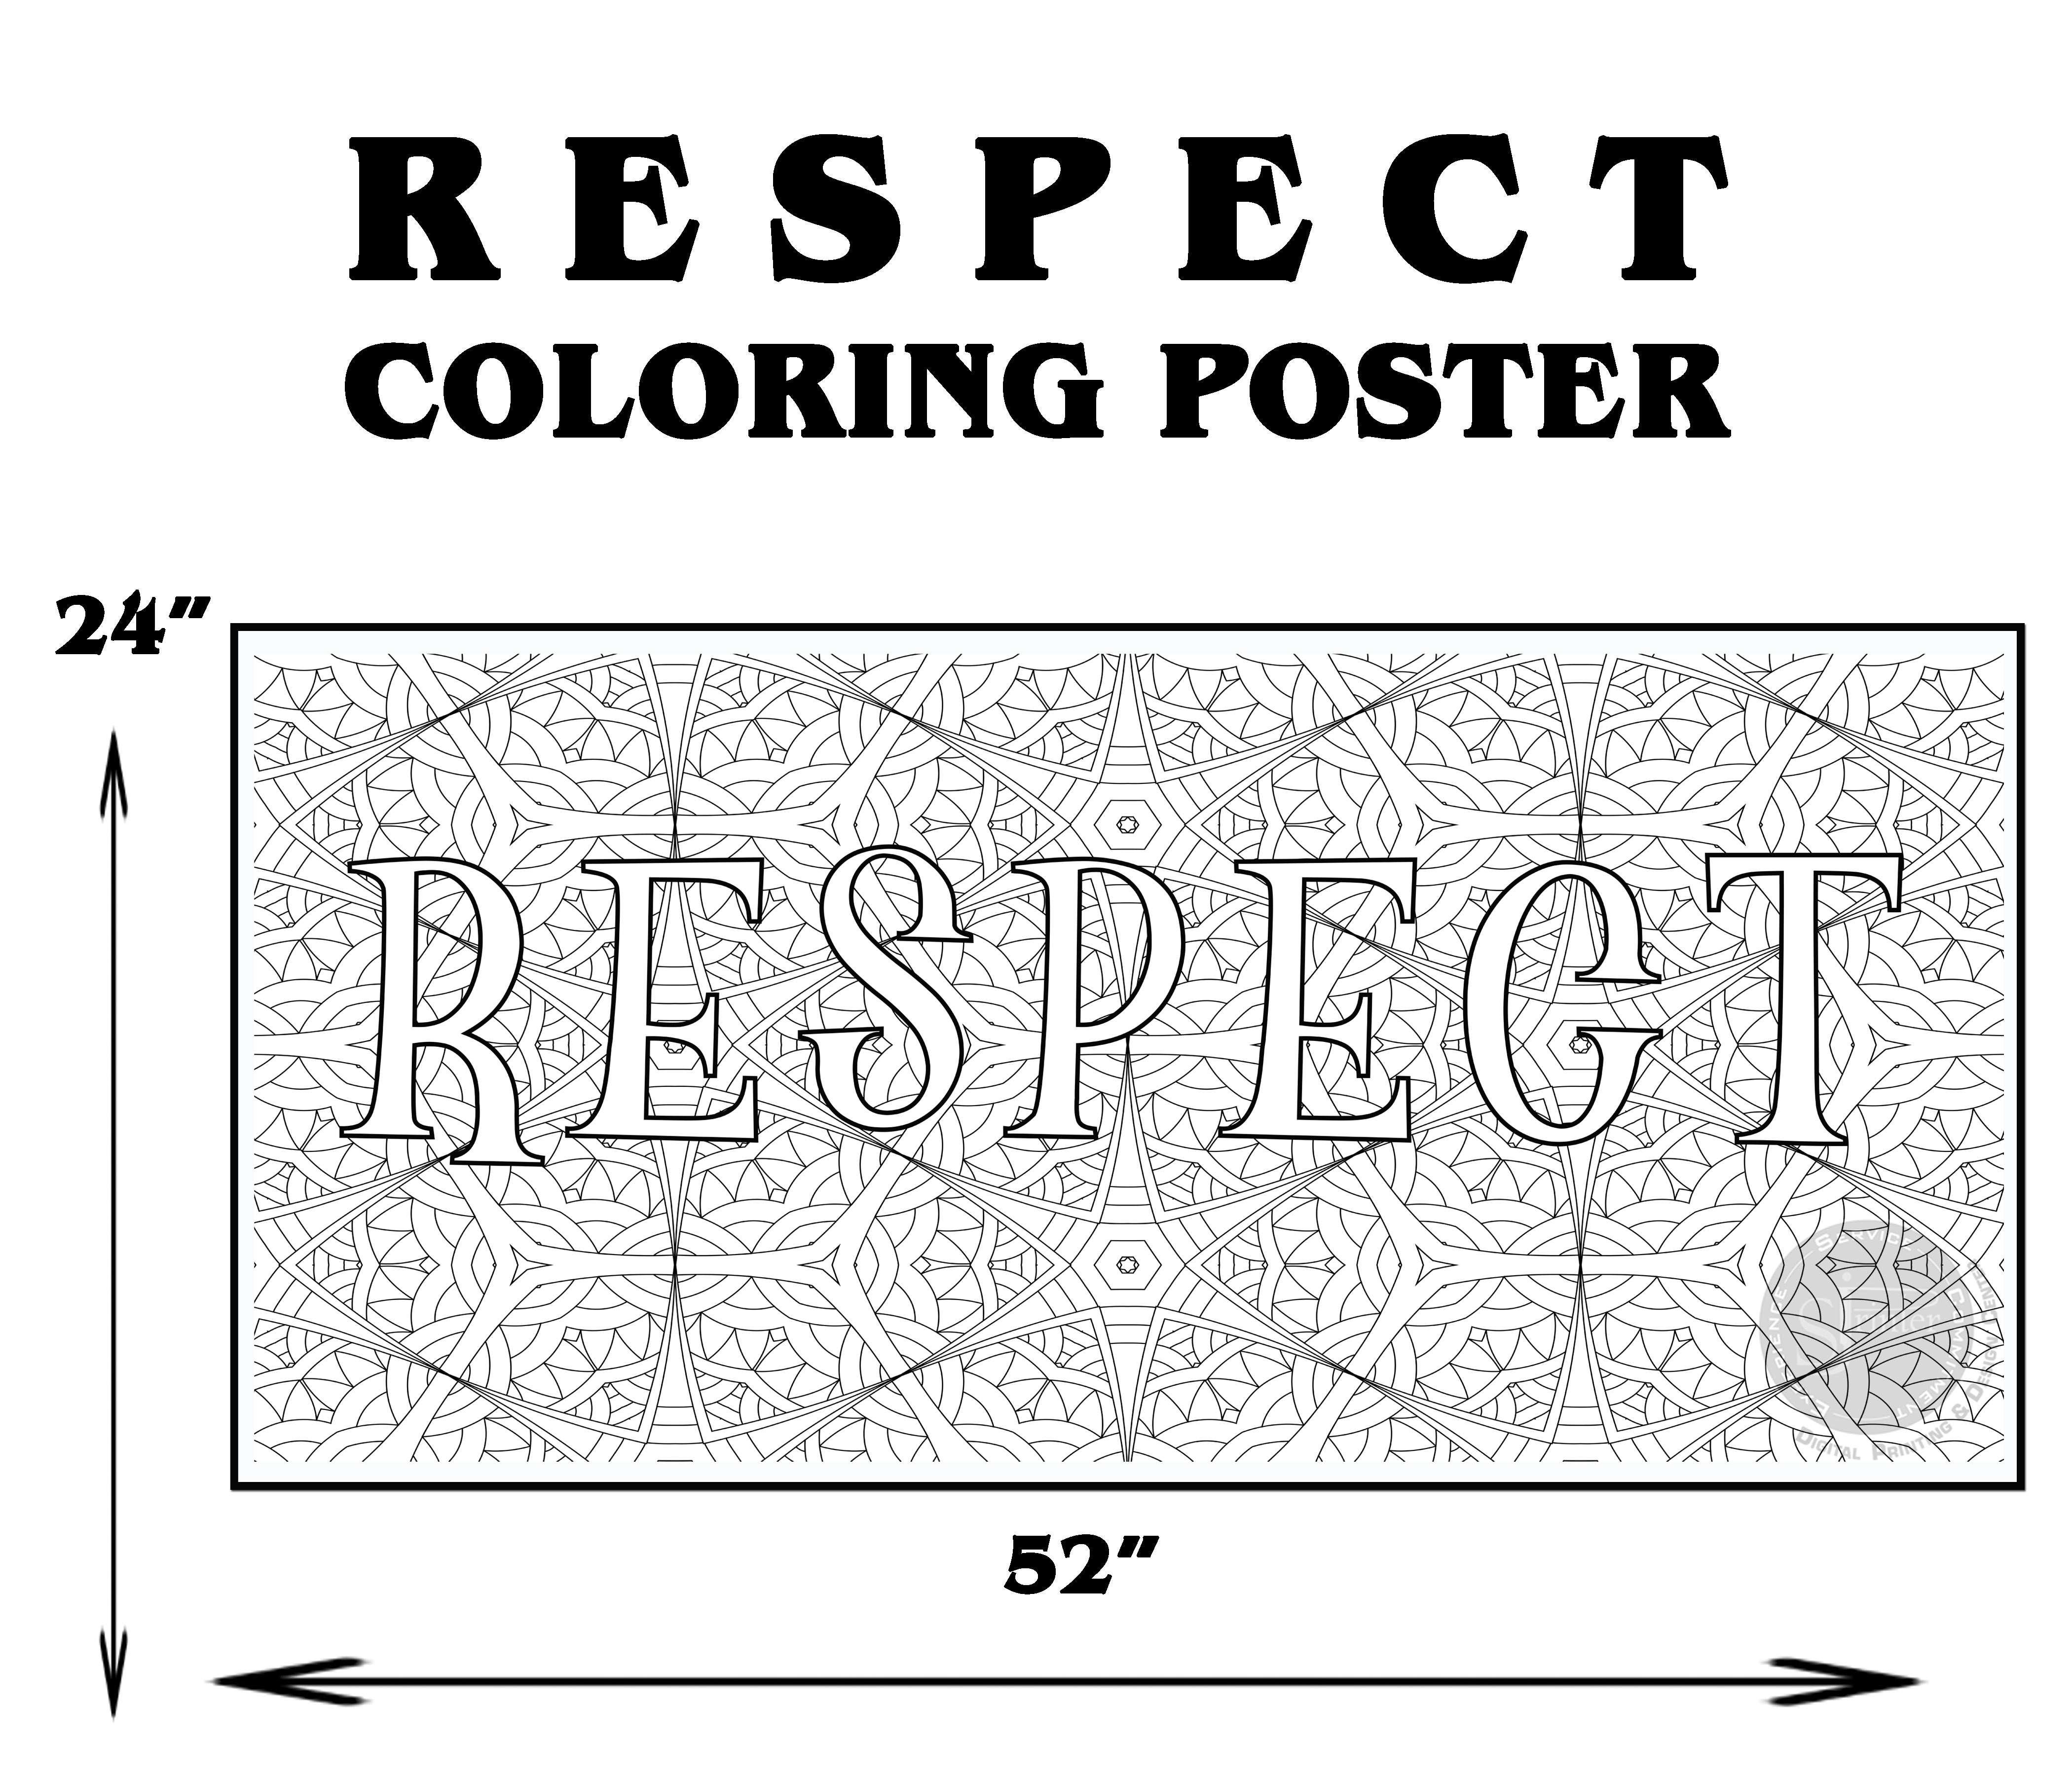 Respect - 24" x 52" - SJPrinter 